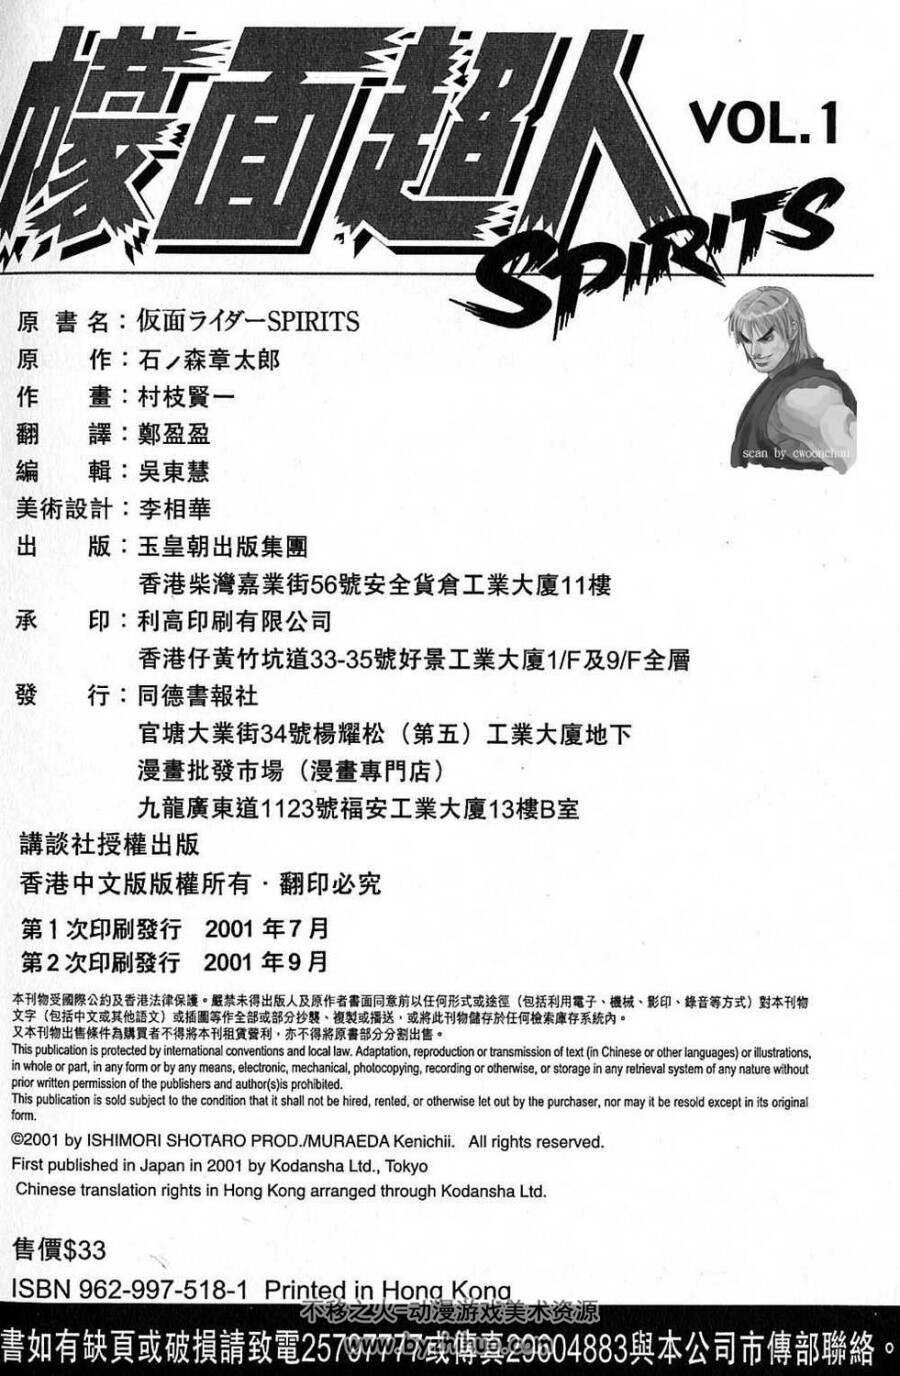 假面骑士Spirits 村枝贤一 1-16卷全 JPG 多版混合 百度网盘分享